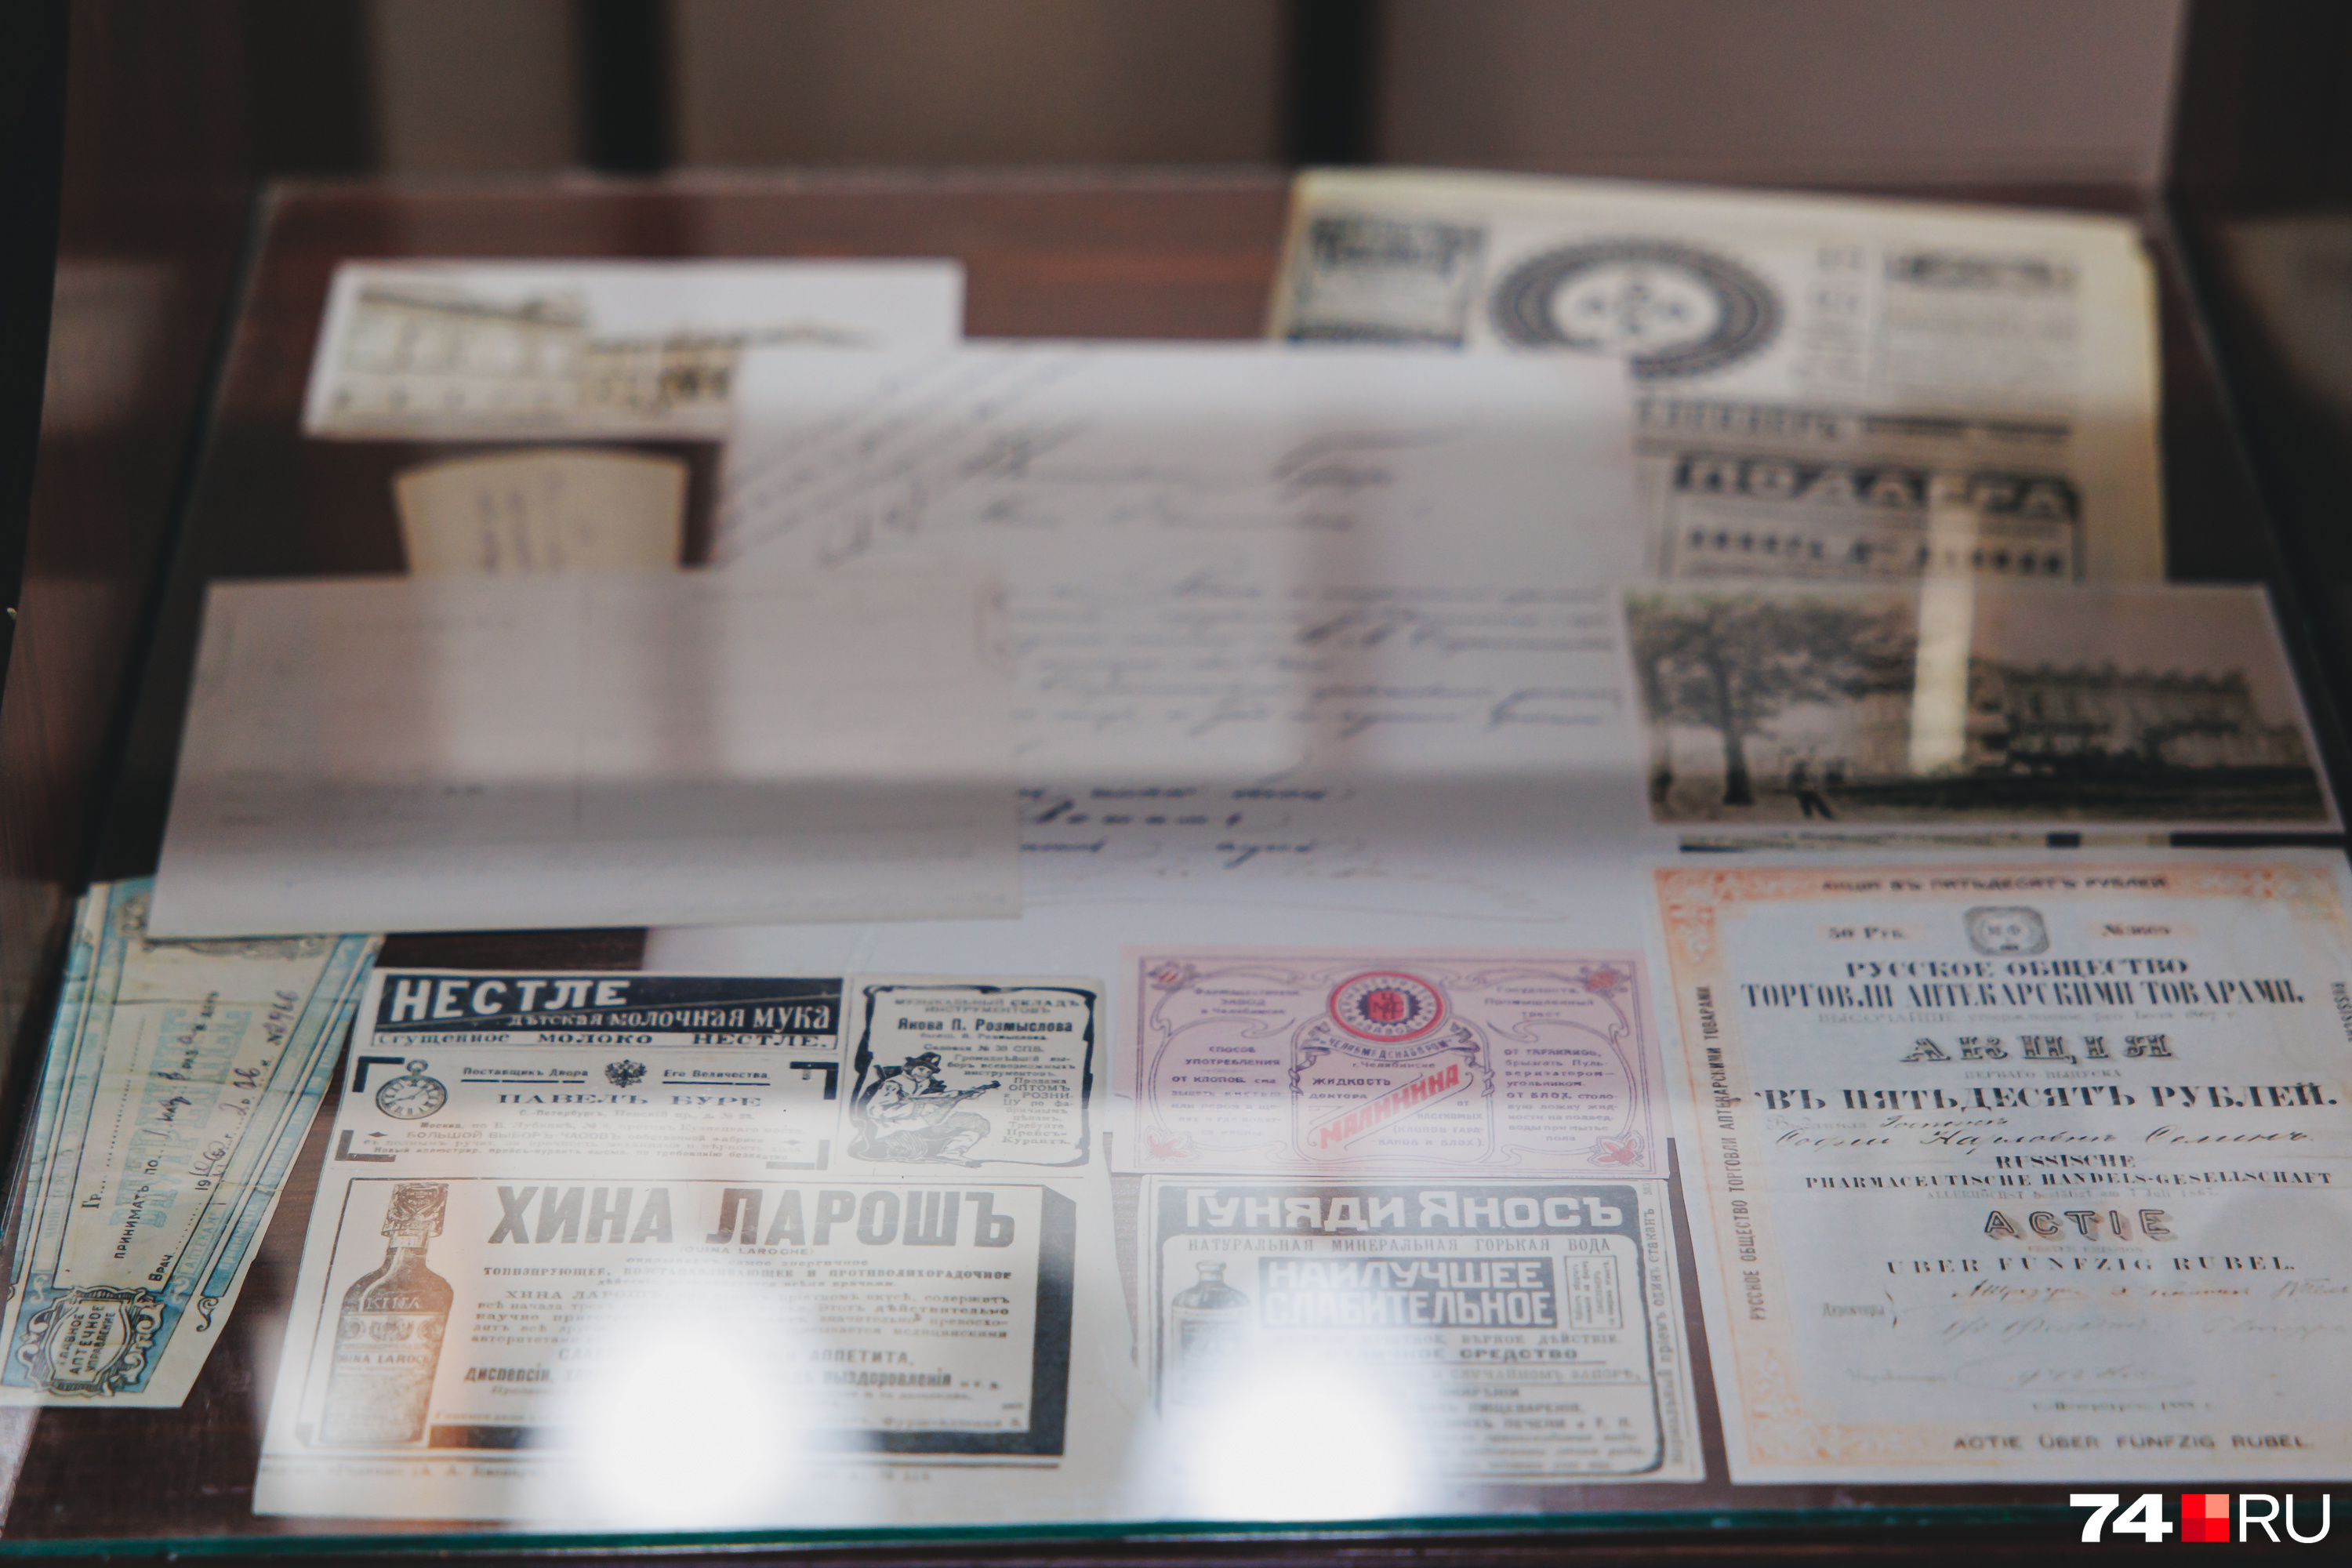 В экспозиции есть документы и примеры рекламных объявлений об аптеке